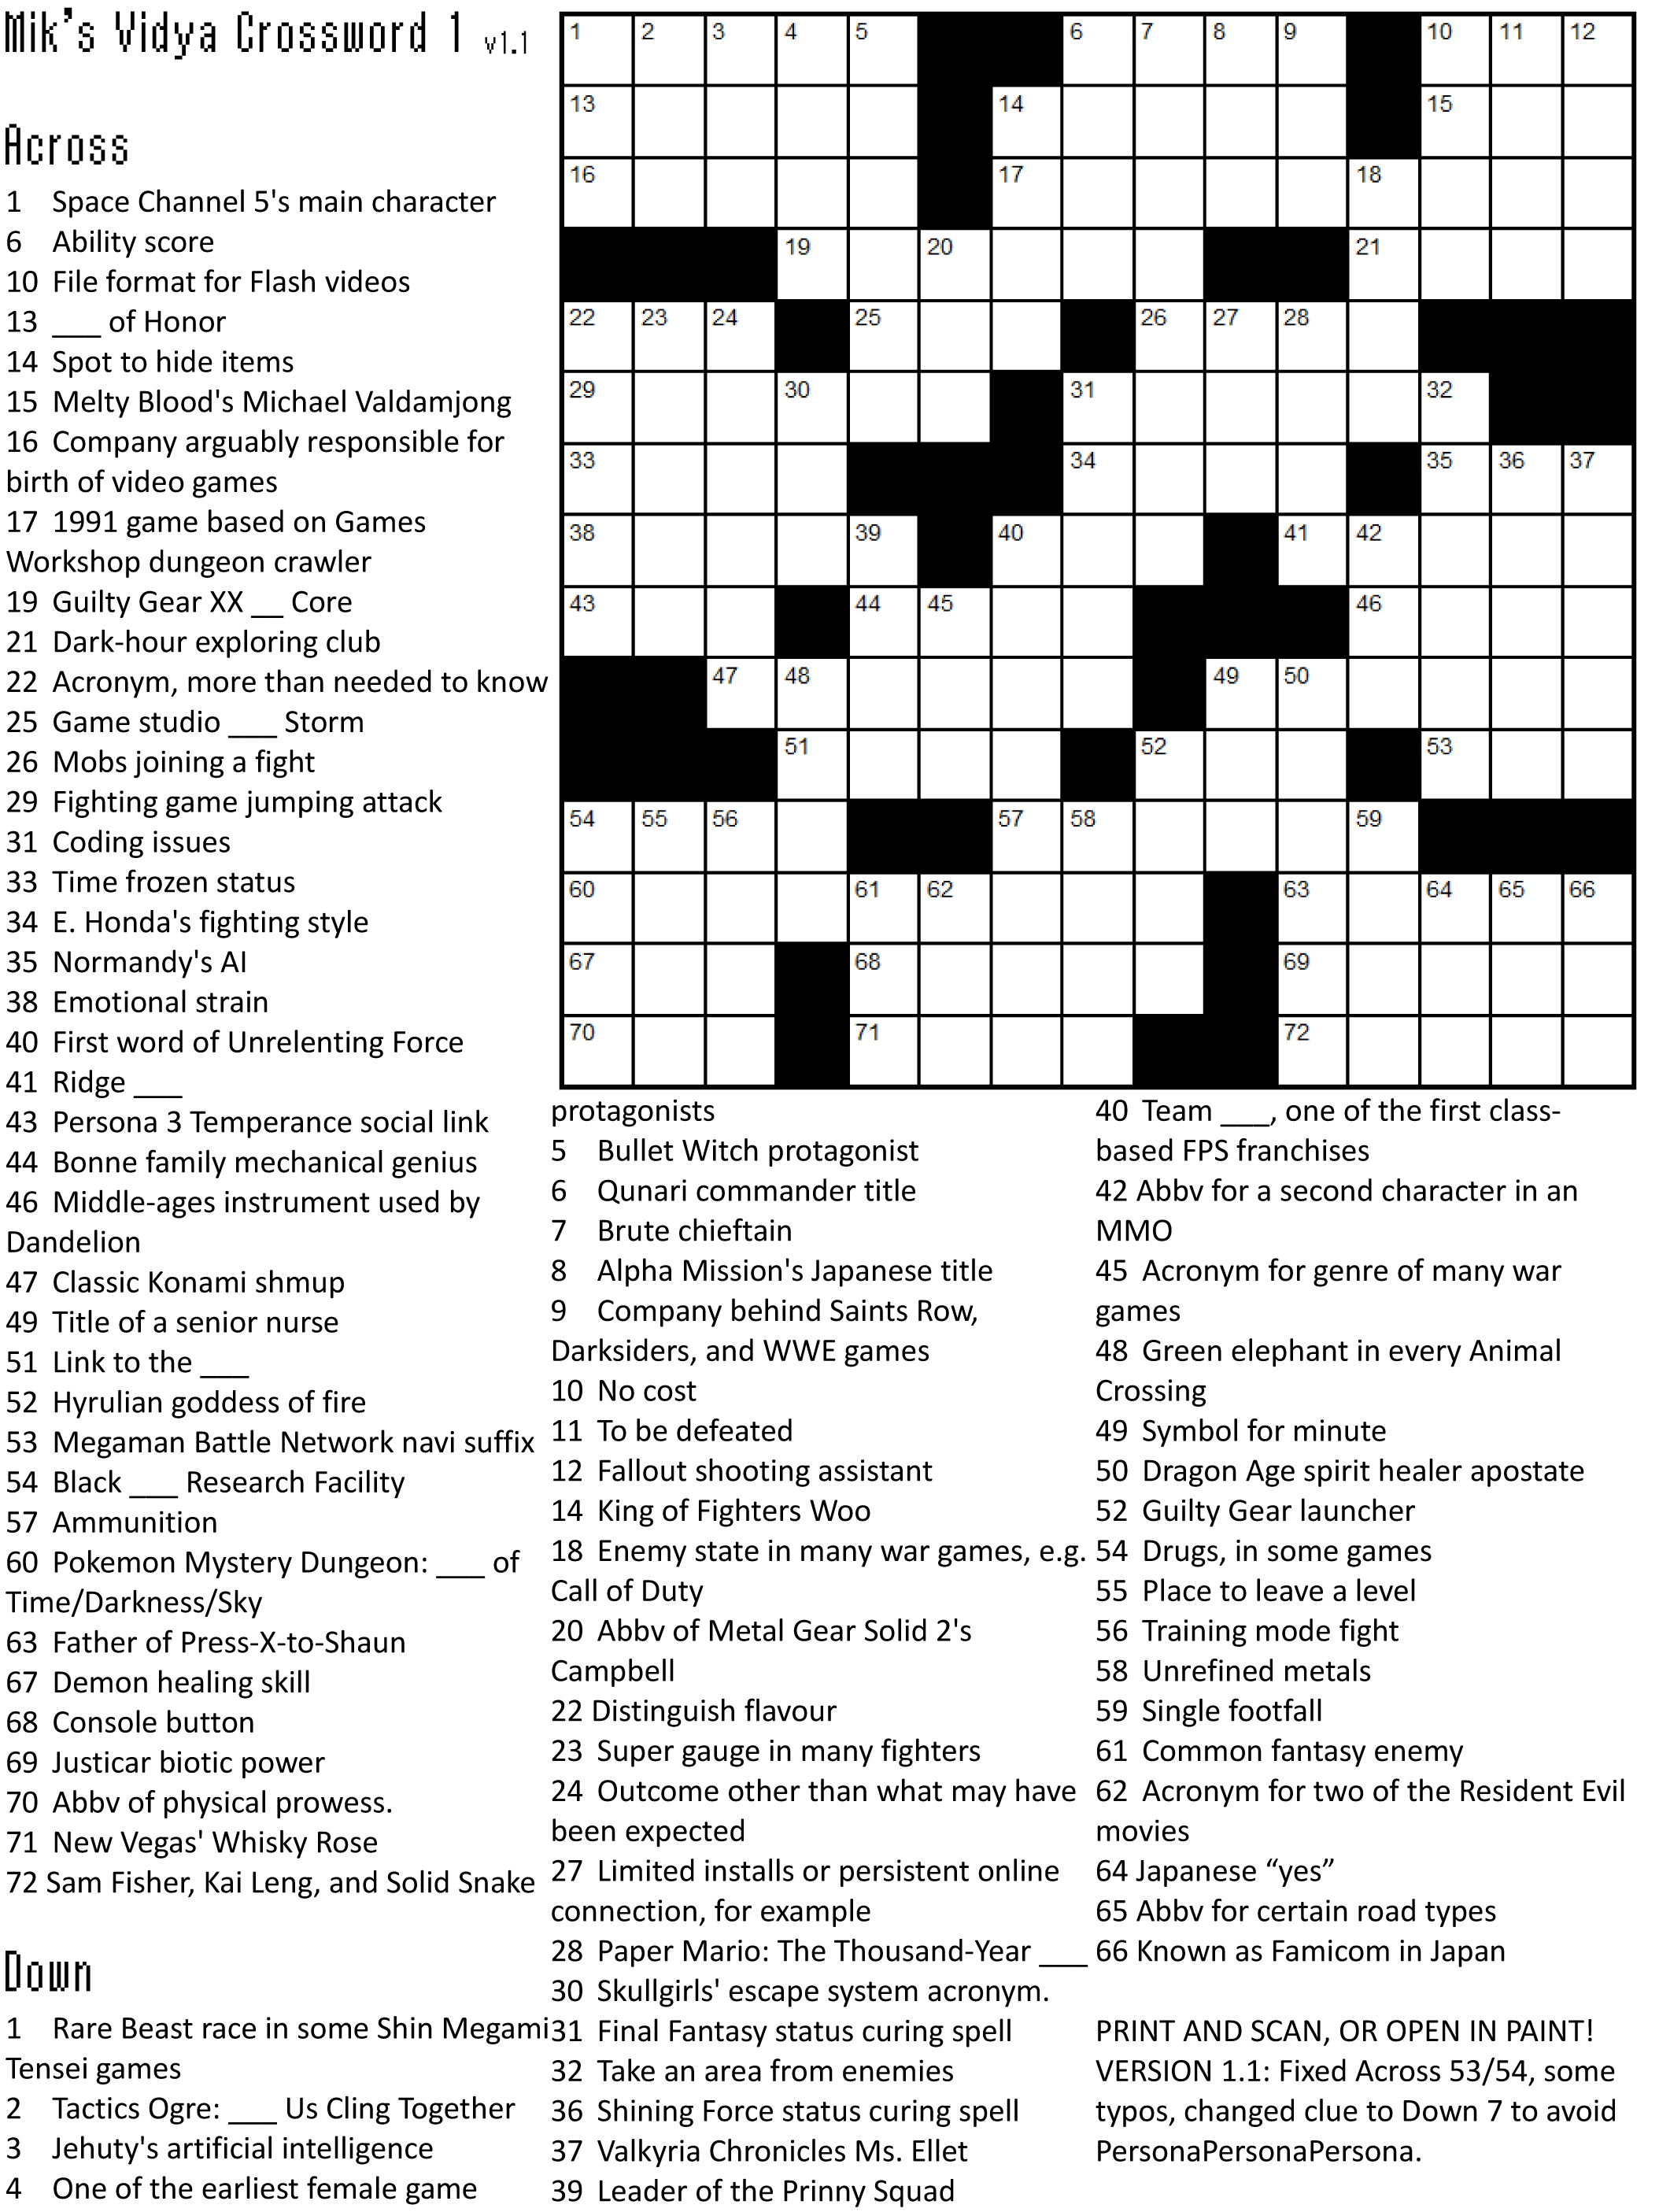 Crossword Puzzle Games | Crossword Puzzle Printable - Daily Crossword Puzzle Printable